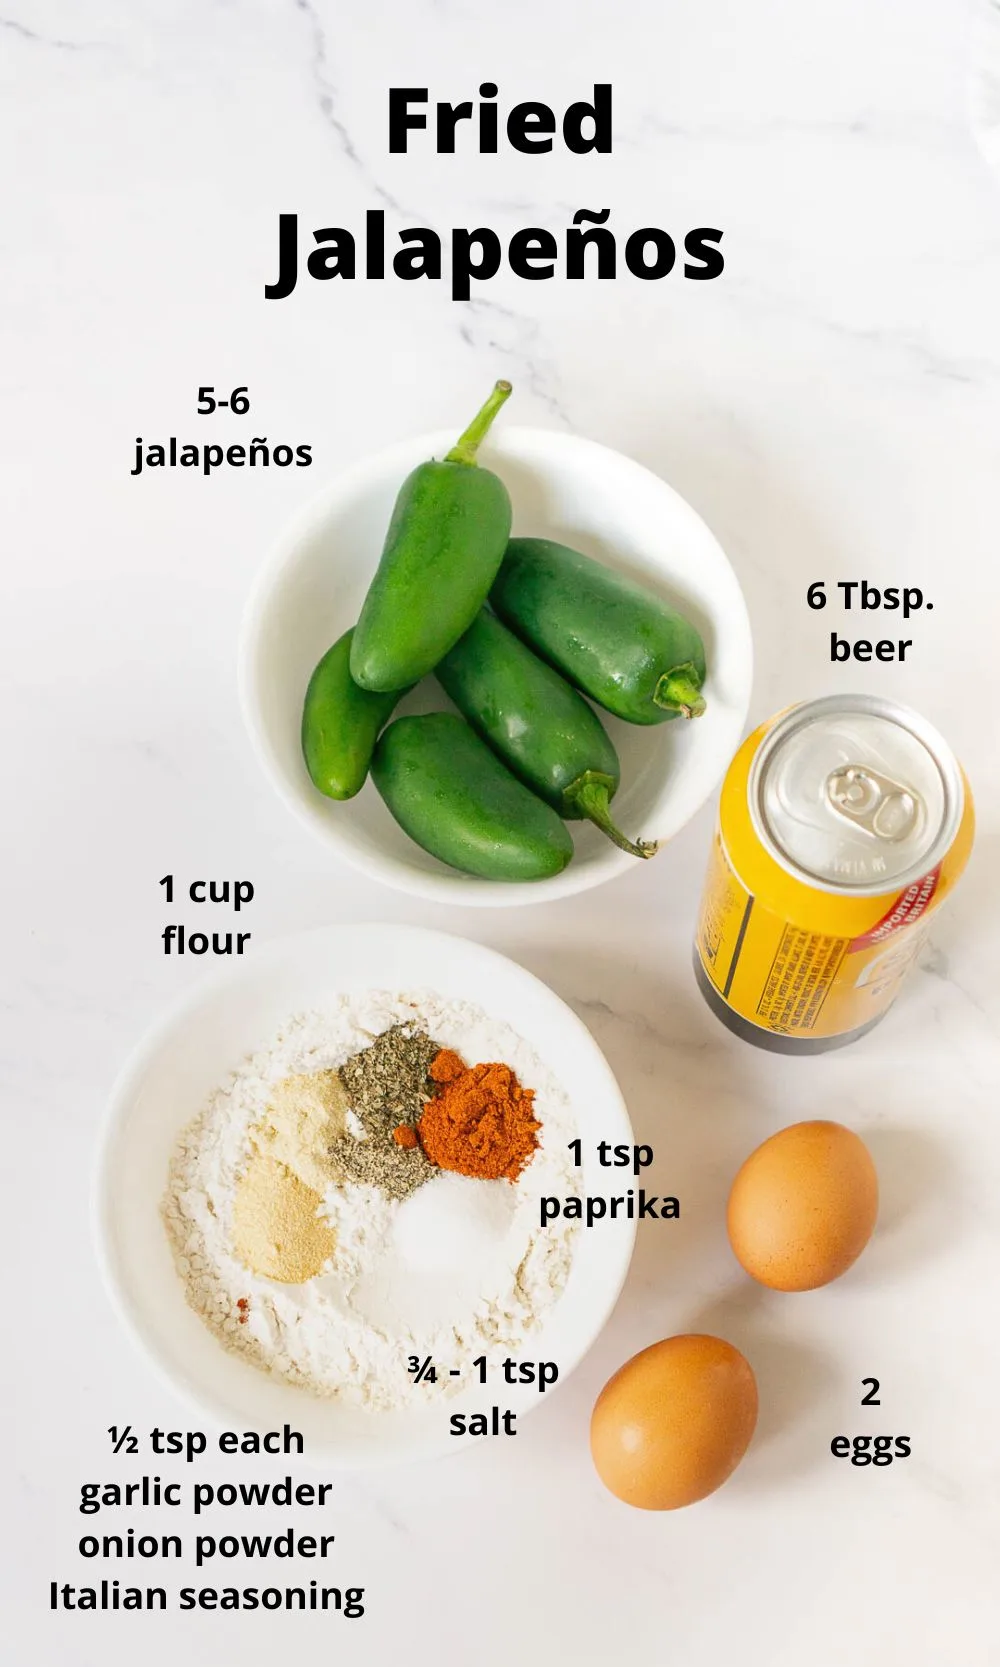 Ingredients to make fried jalapeños